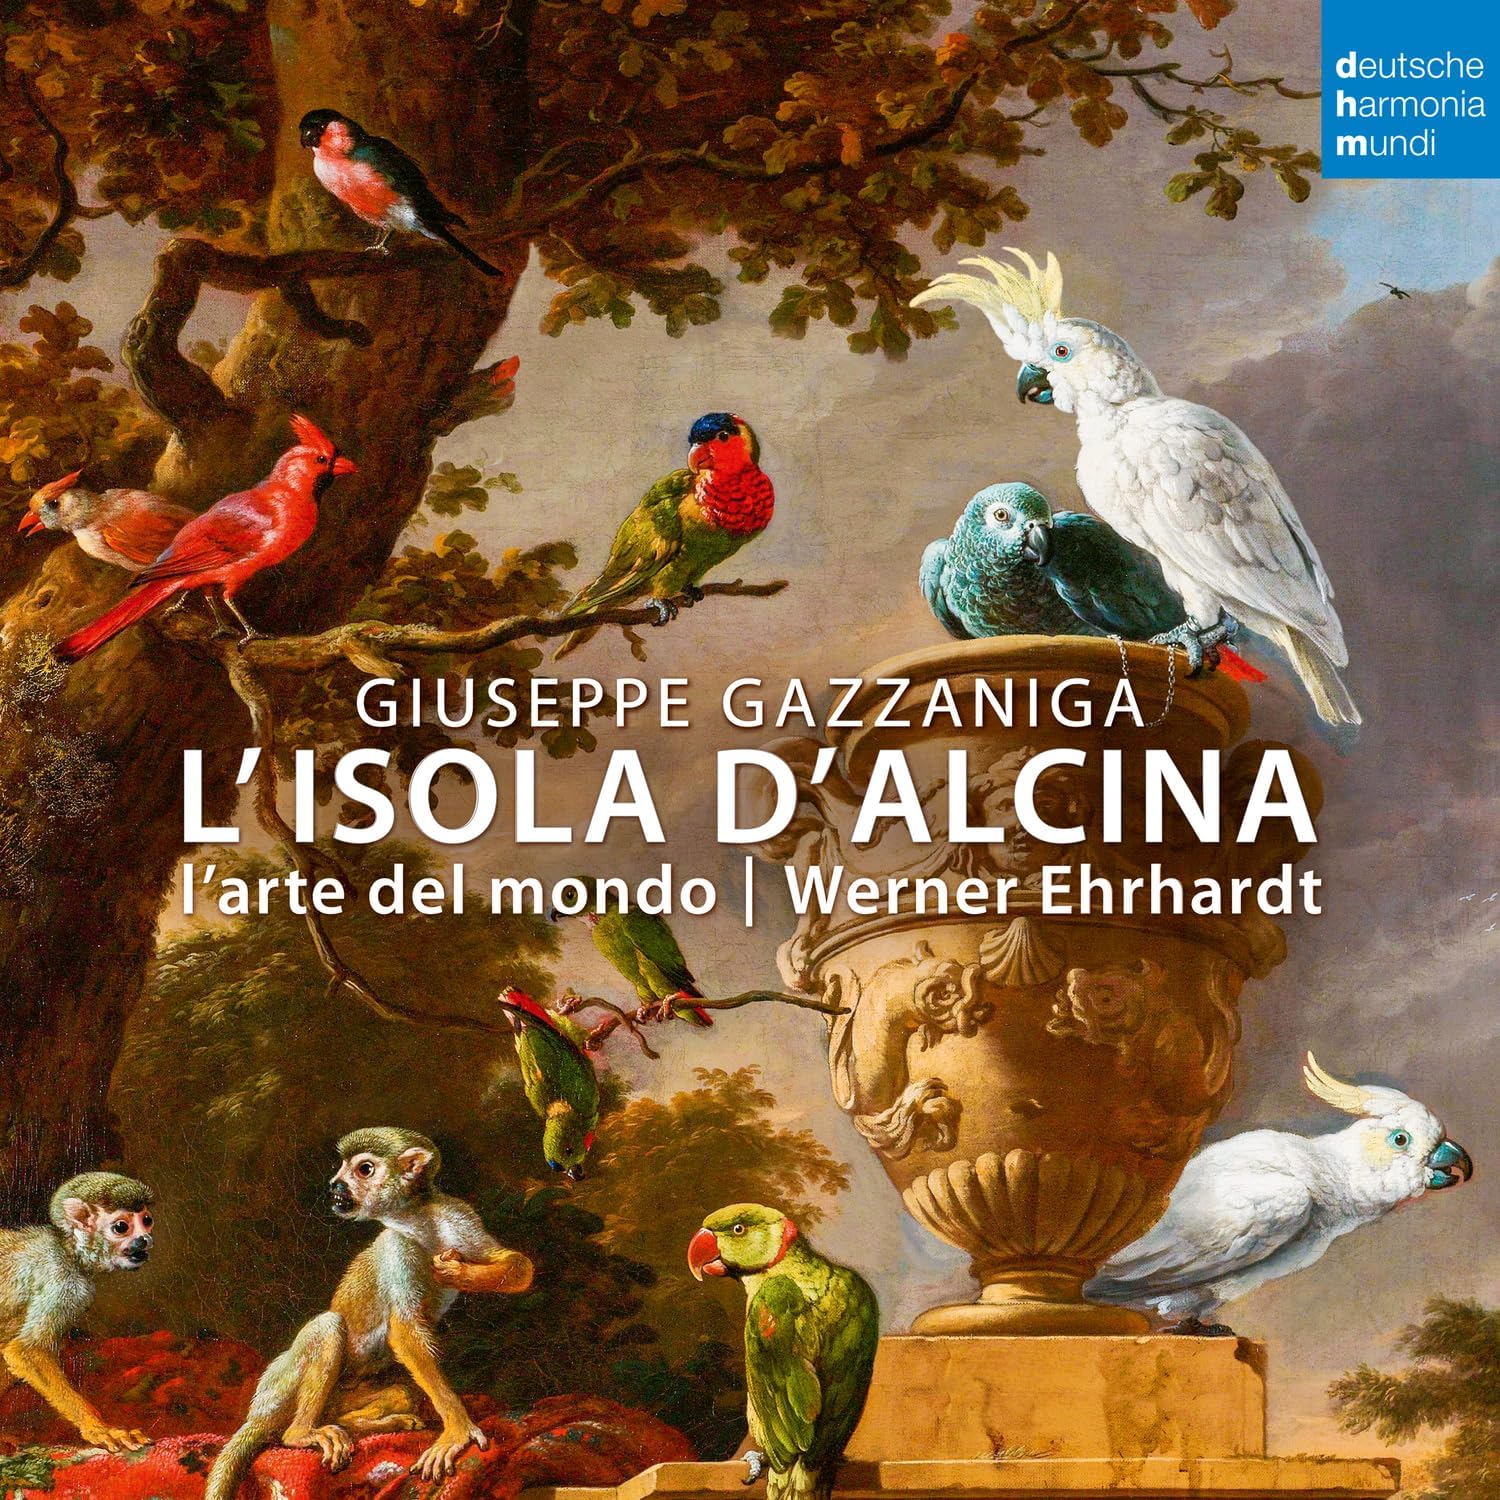 Antonio Salieri: La Fiera di Venezia | L\'Arte Del Mondo, Werner Ehrhardt